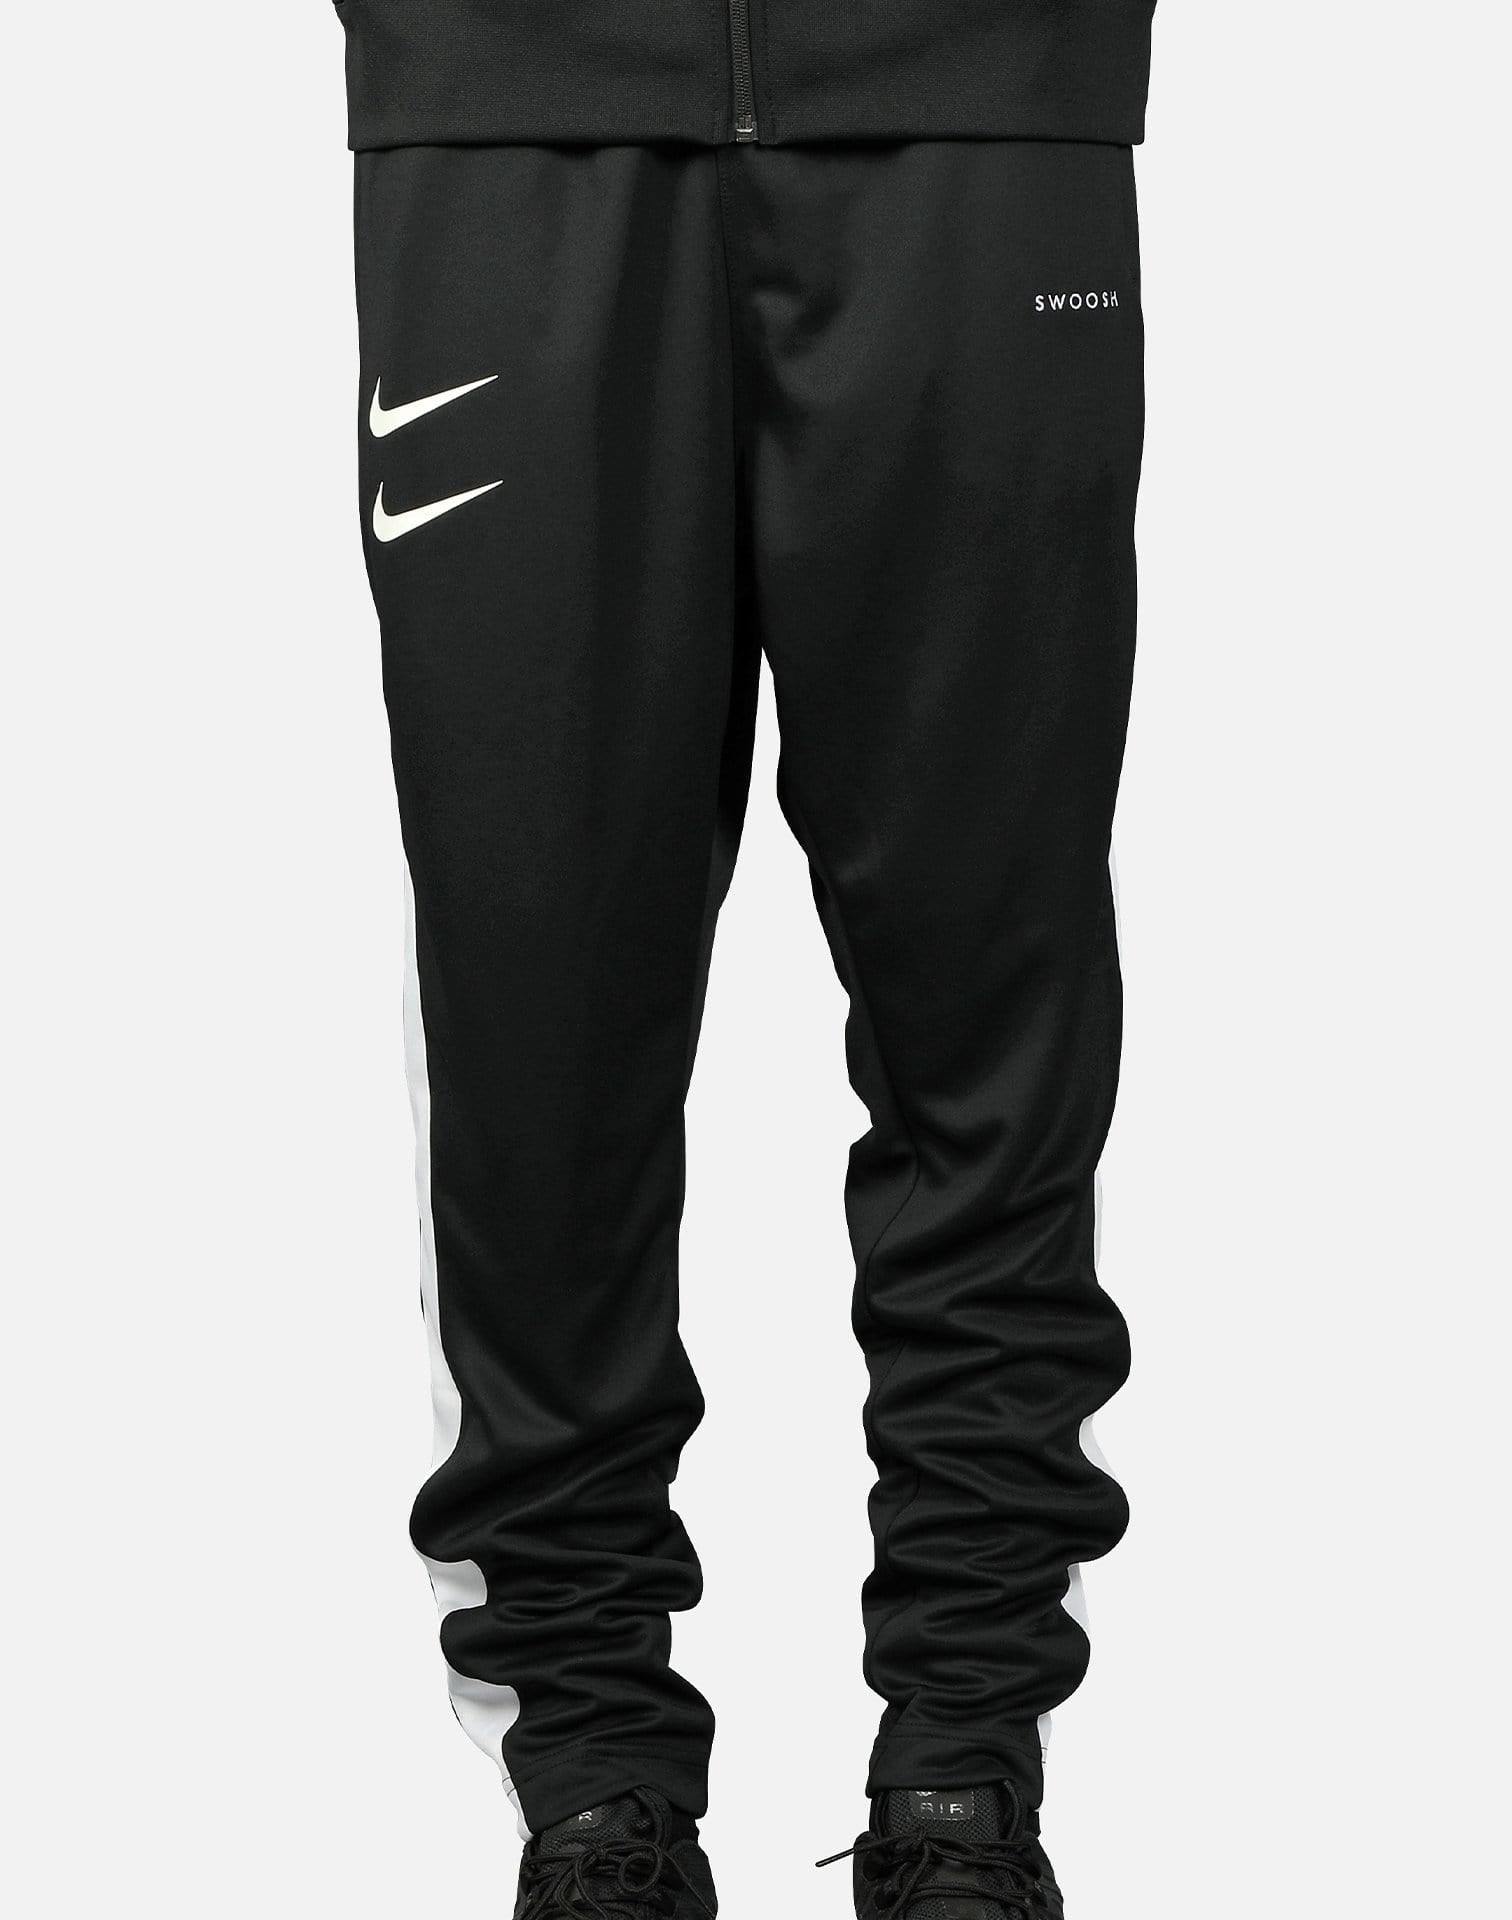 Nike Swoosh NSW Double Swoosh Track Pants Size XXL Black White CJ4873-010